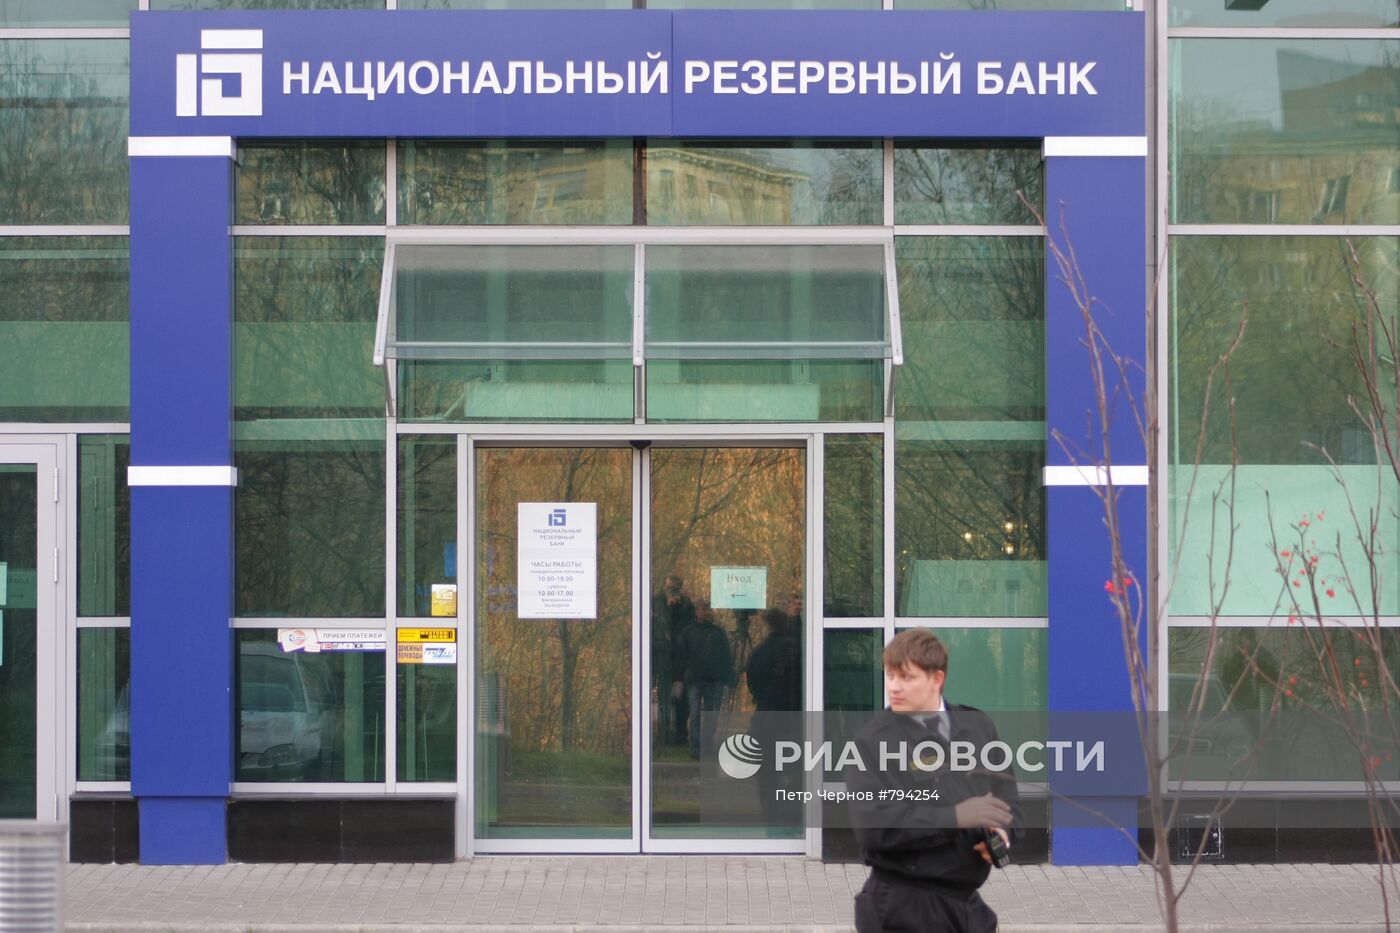 В офисах Национального резервного банка идет выемка документов